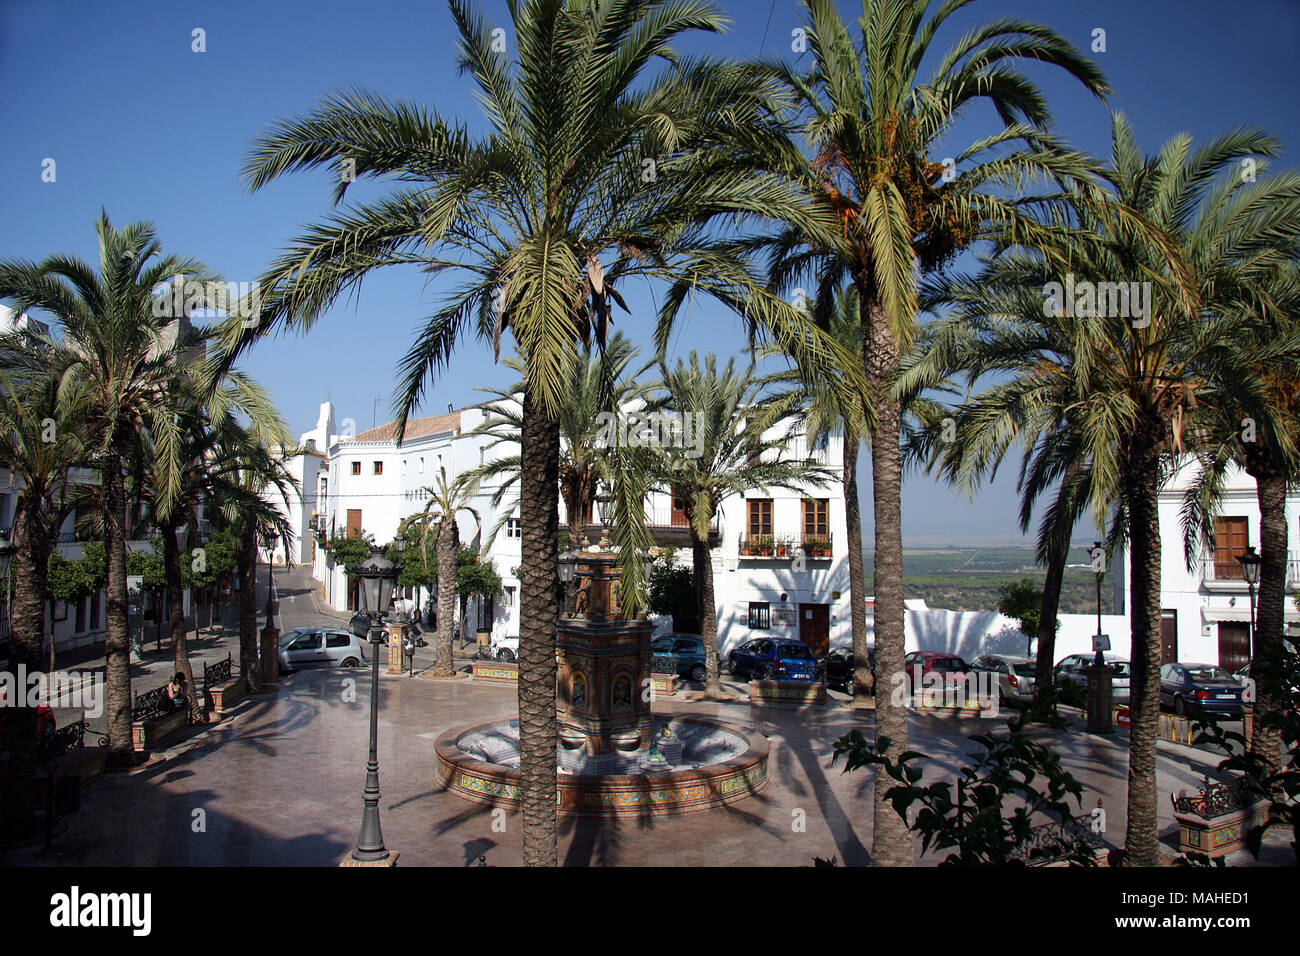 Street scene from Vejer de la Frontera in Spain Stock Photo